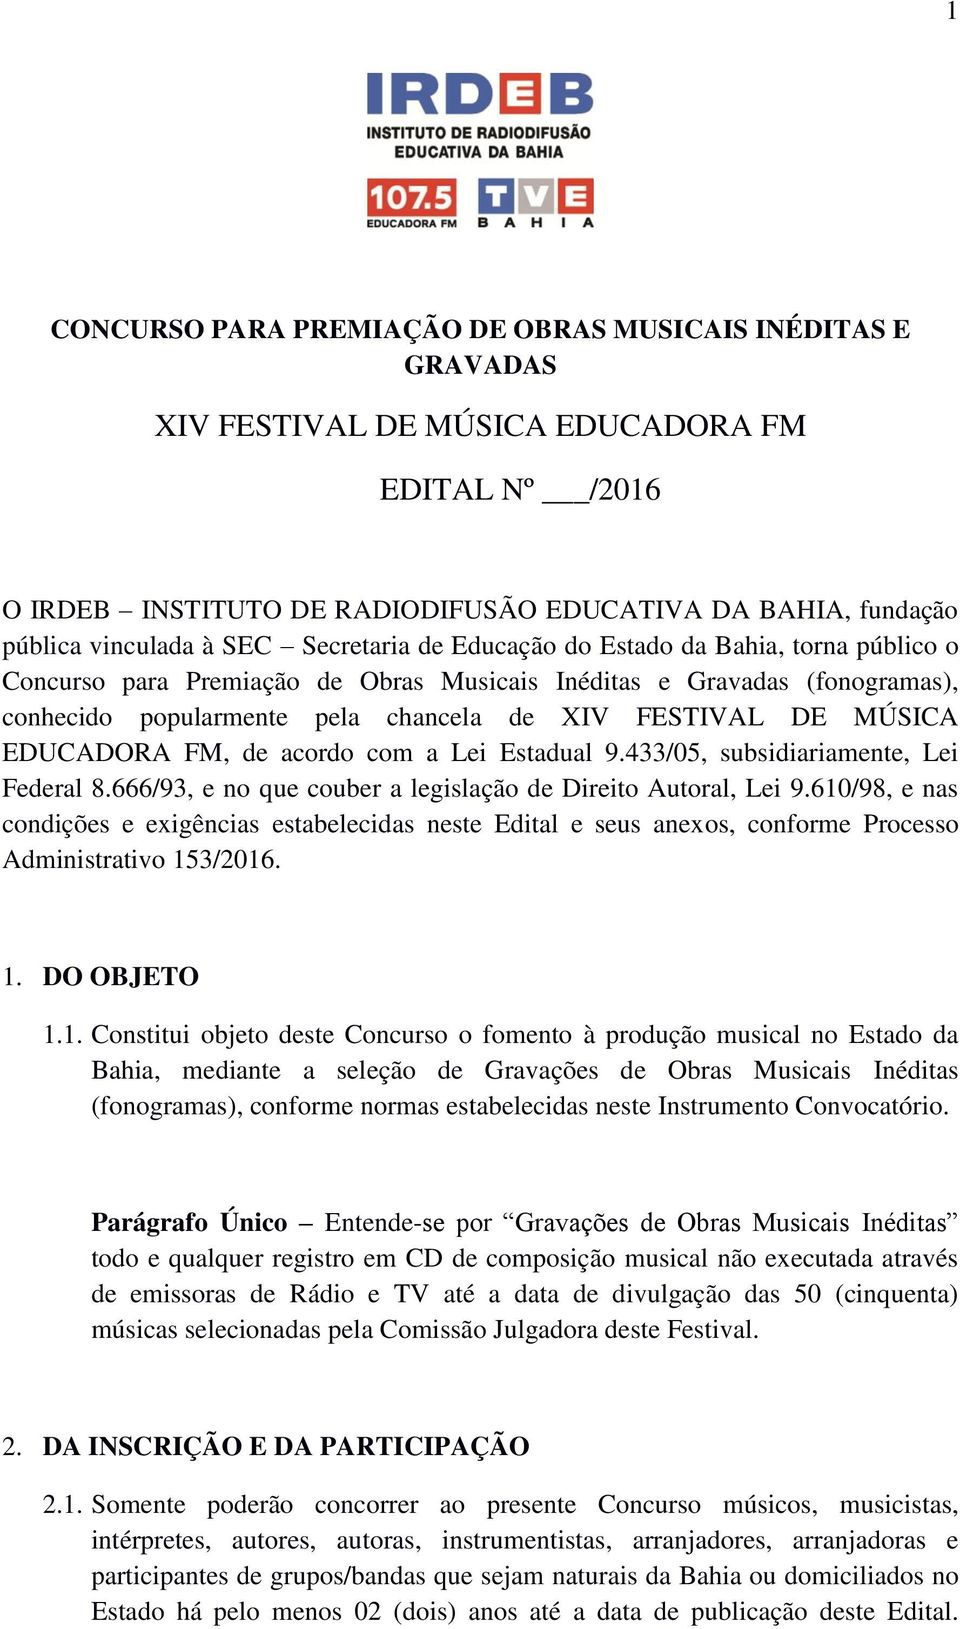 MÚSICA EDUCADORA FM, de acordo com a Lei Estadual 9.433/05, subsidiariamente, Lei Federal 8.666/93, e no que couber a legislação de Direito Autoral, Lei 9.